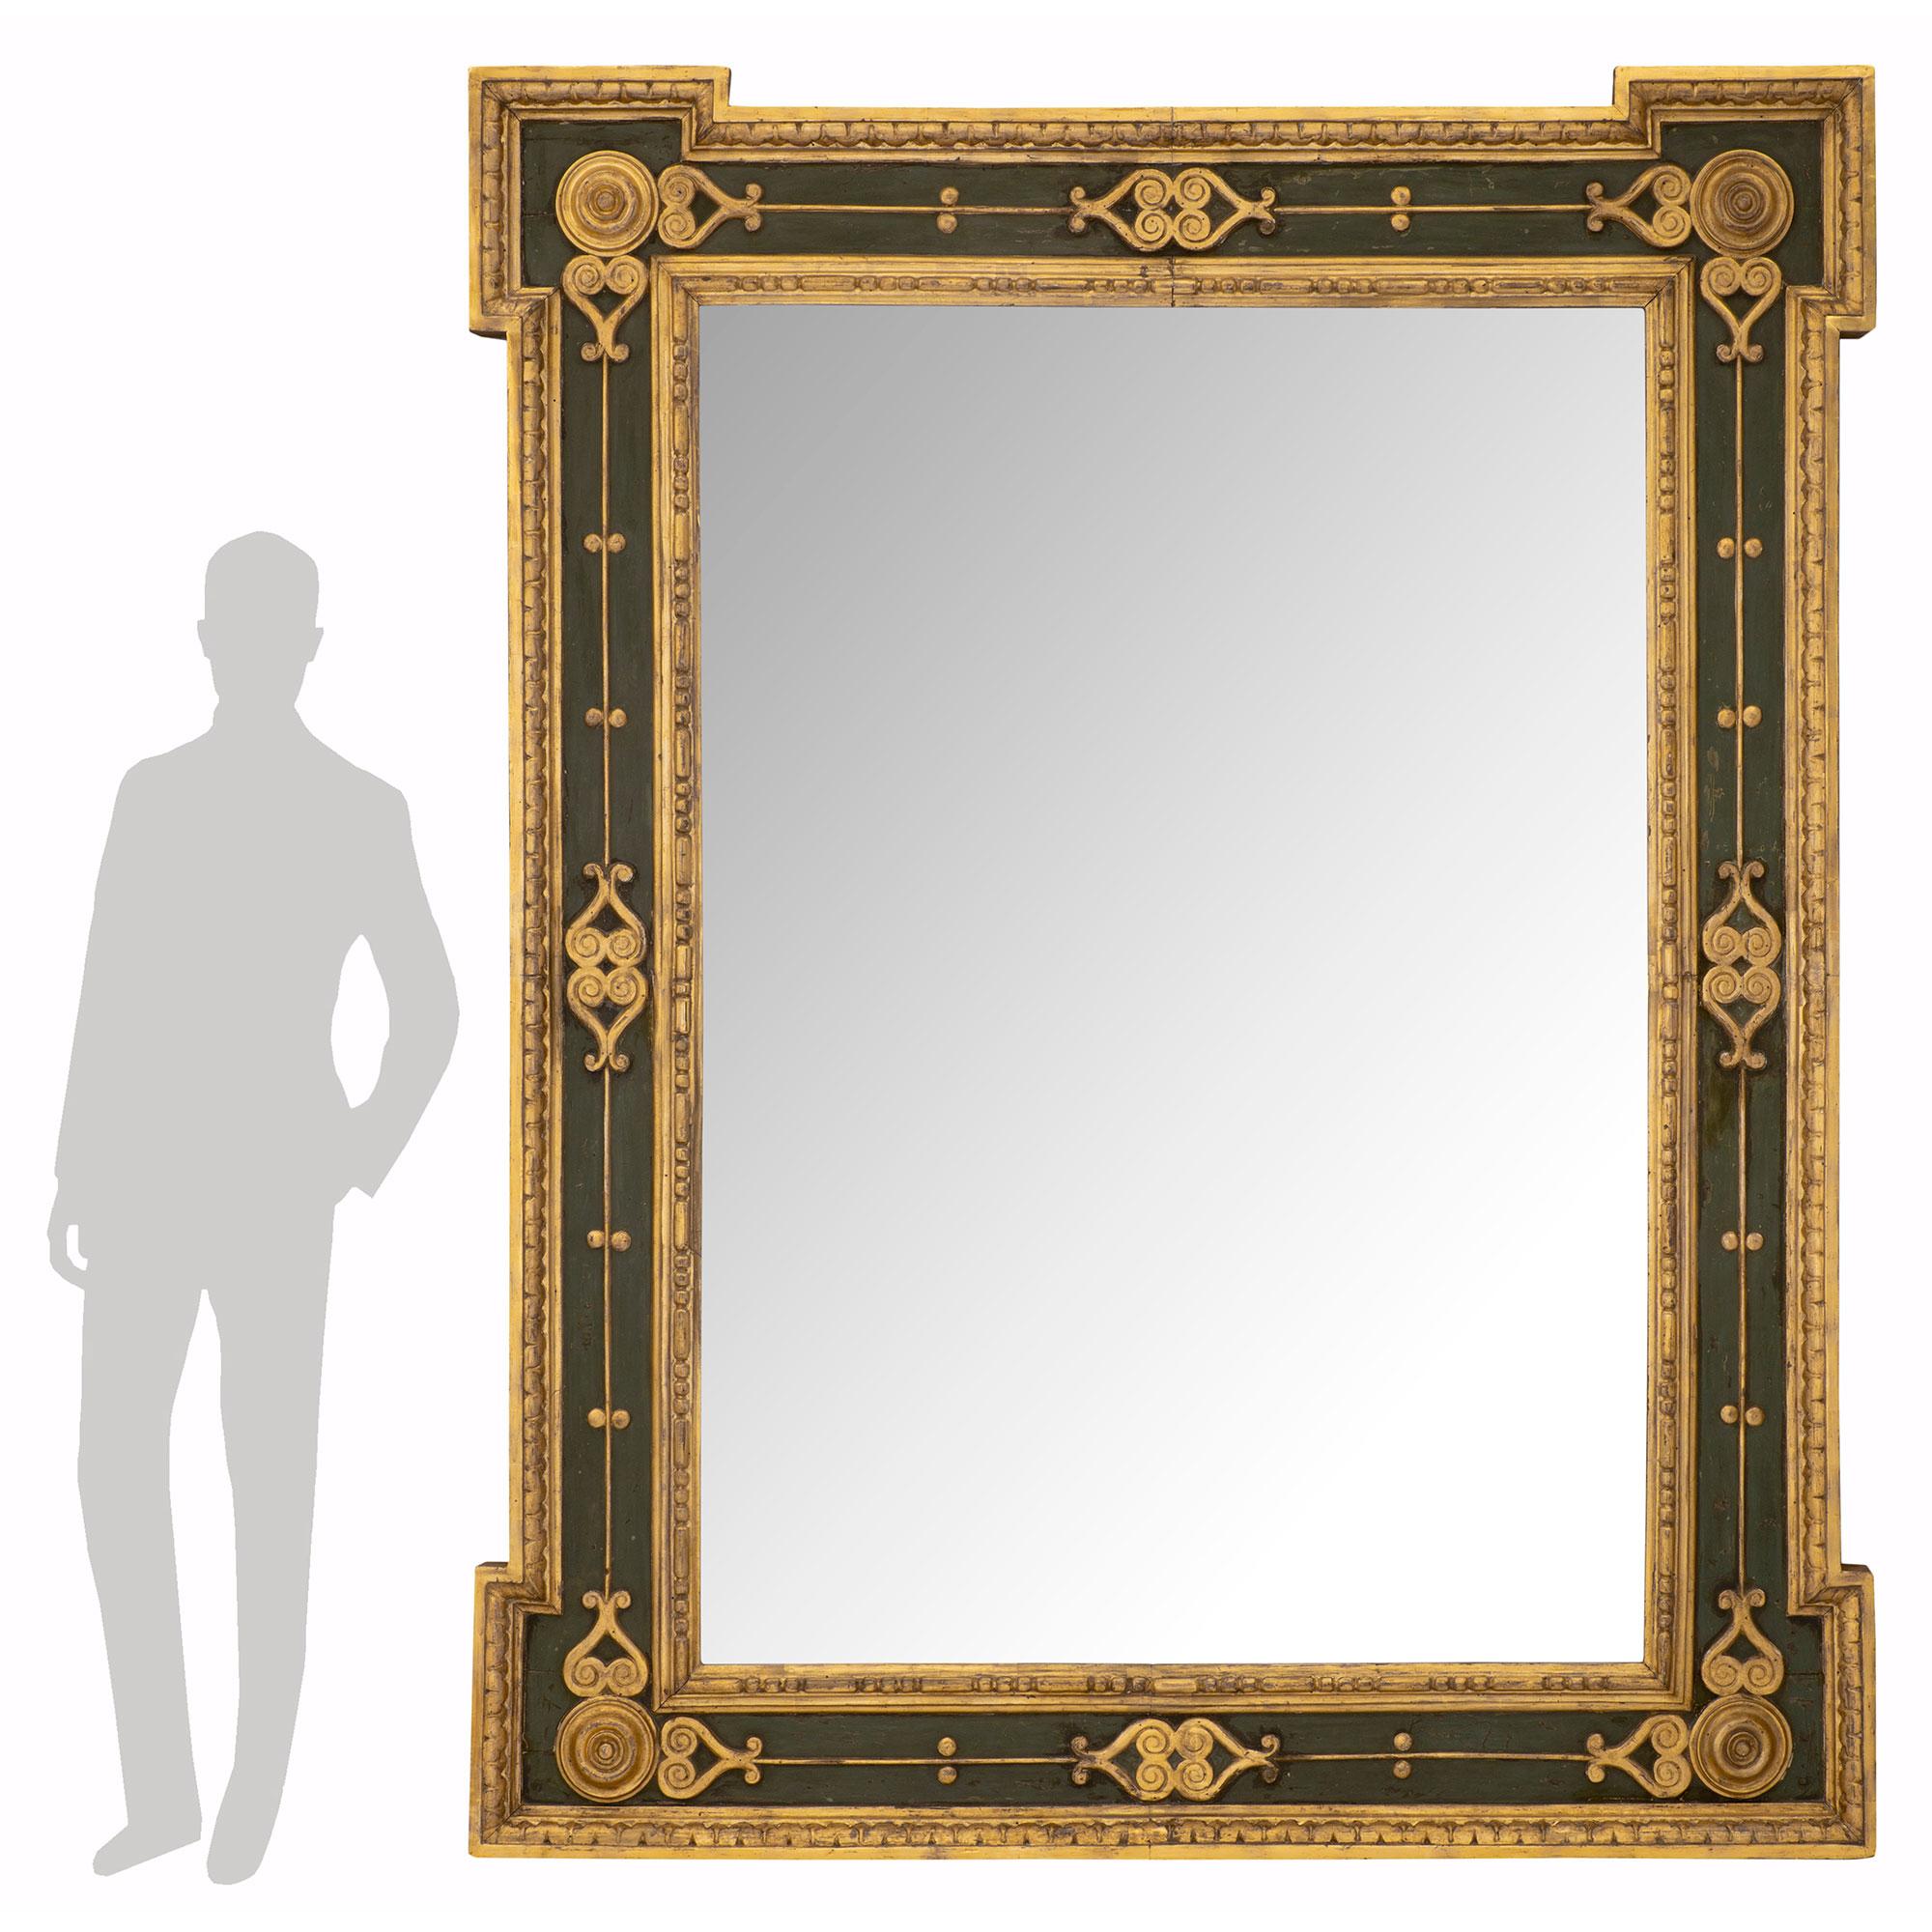 Un miroir italien du début du 19ème siècle en bois patiné et doré de style Louis XVI, très impressionnant et de taille monumentale. La plaque centrale du miroir est insérée dans une belle bande de bois doré moucheté et perlé très décorative. Le